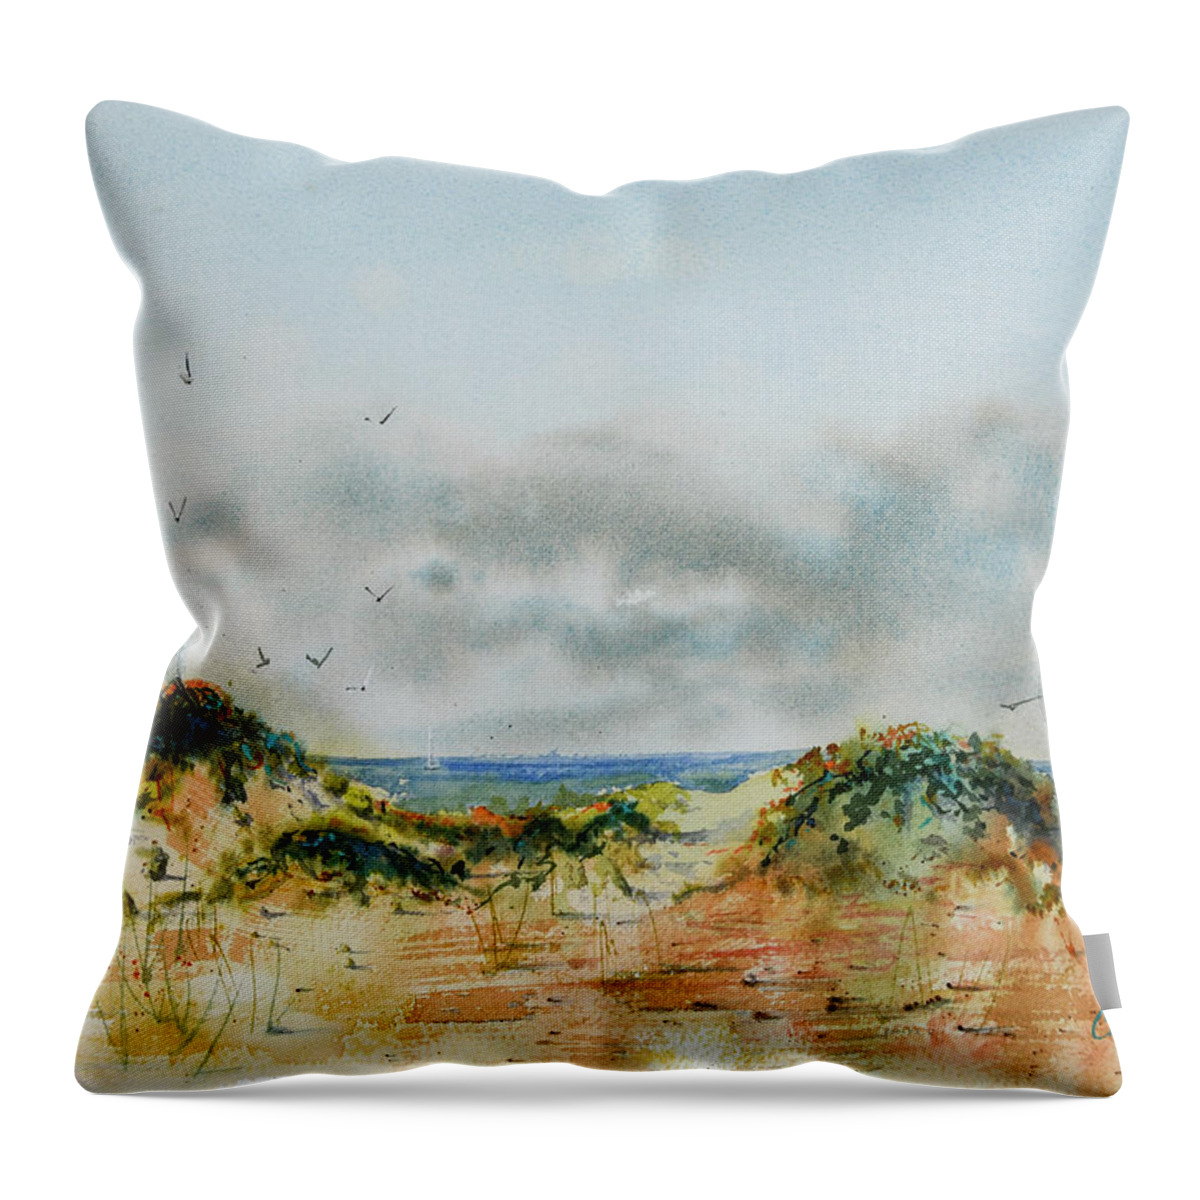 Plein Air Throw Pillow featuring the painting Ventura Beach California by Cheryl Prather